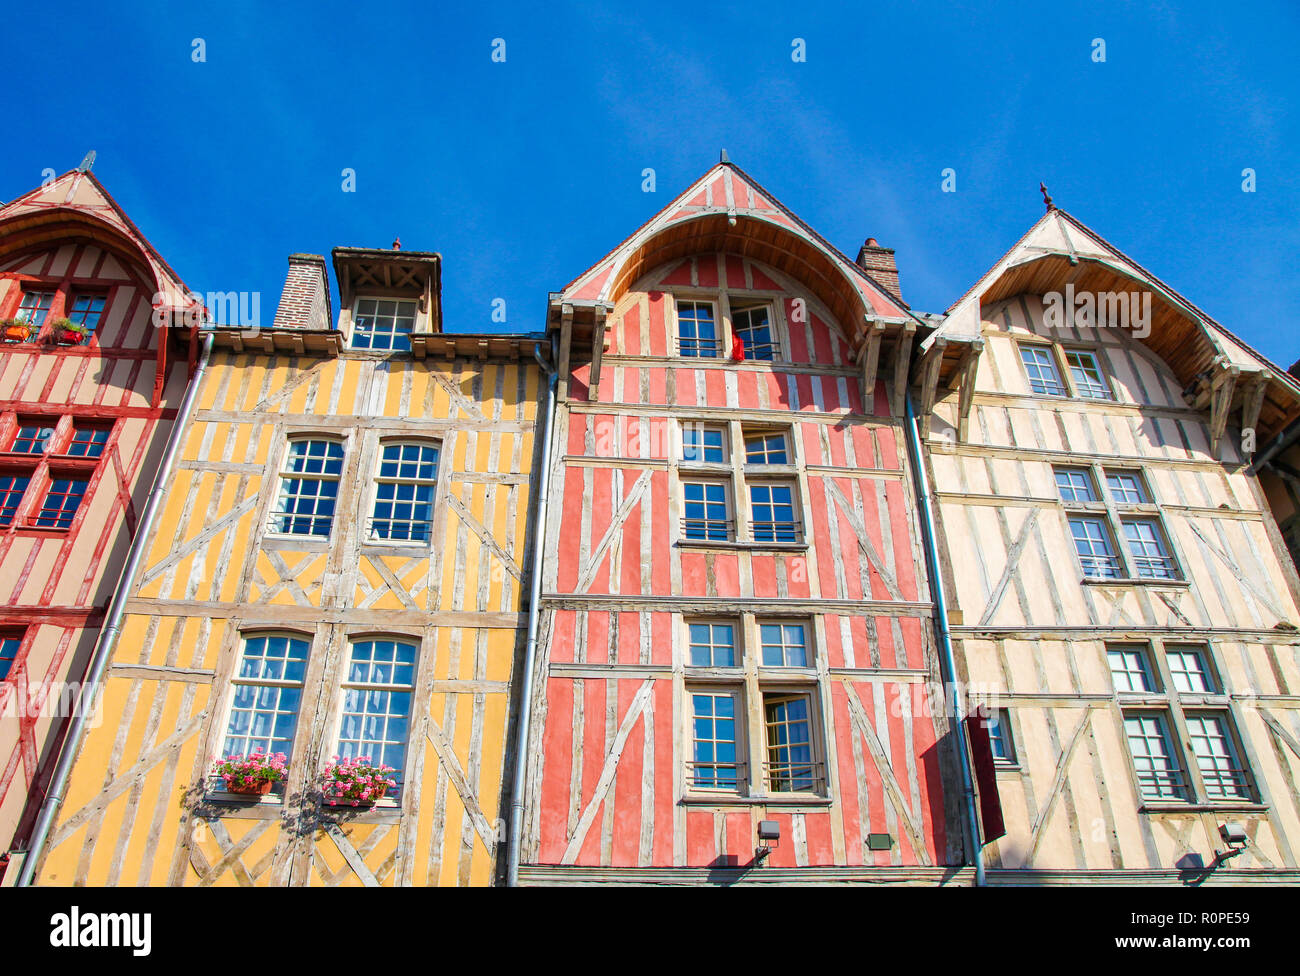 Berühmte historische Fachwerkhäuser im Zentrum von Troyes, Hauptstadt des Département Aube in der Champagne in Nord-Zentral-Frankreich. Stockfoto